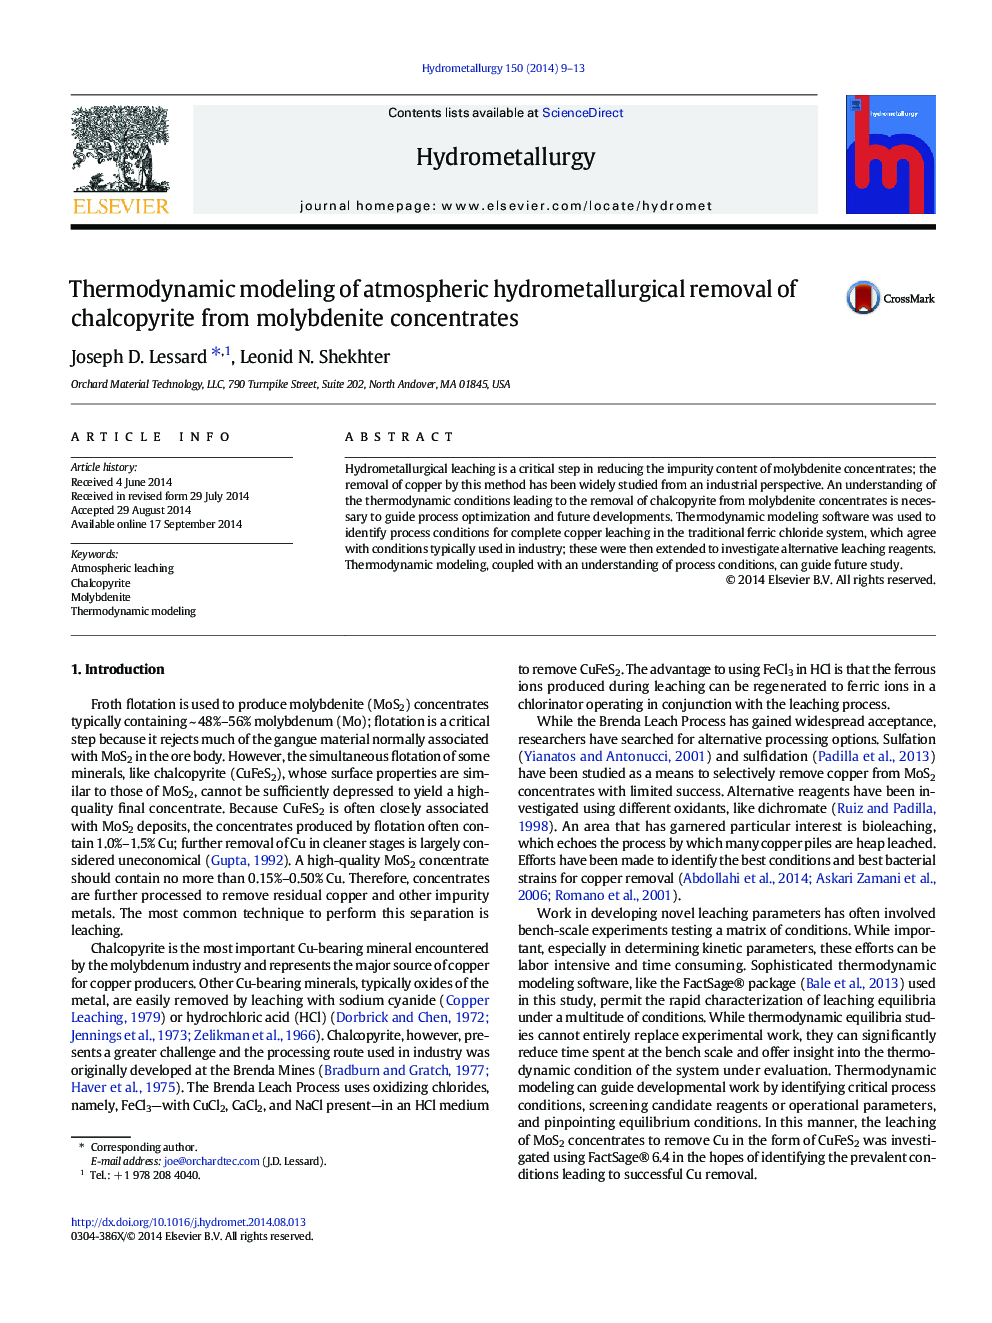 مدلسازی ترمودینامیکی حذف هیدرومتالورژی اتمسفر کلوپوپییر از کنسانتره مولیبدنیت 